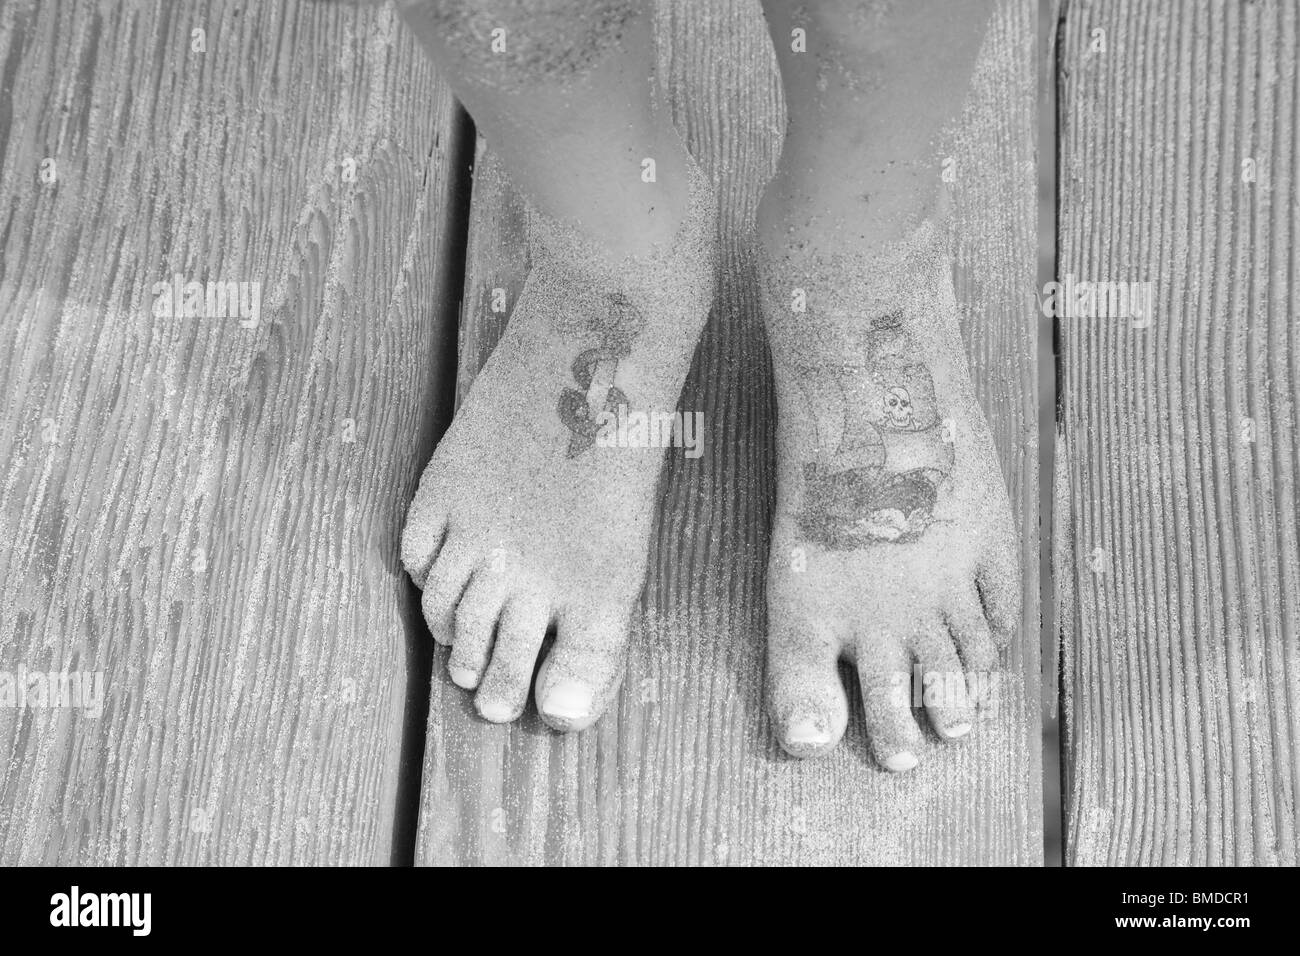 Des tatouages temporaires et de sable sur les pieds de childs Banque D'Images